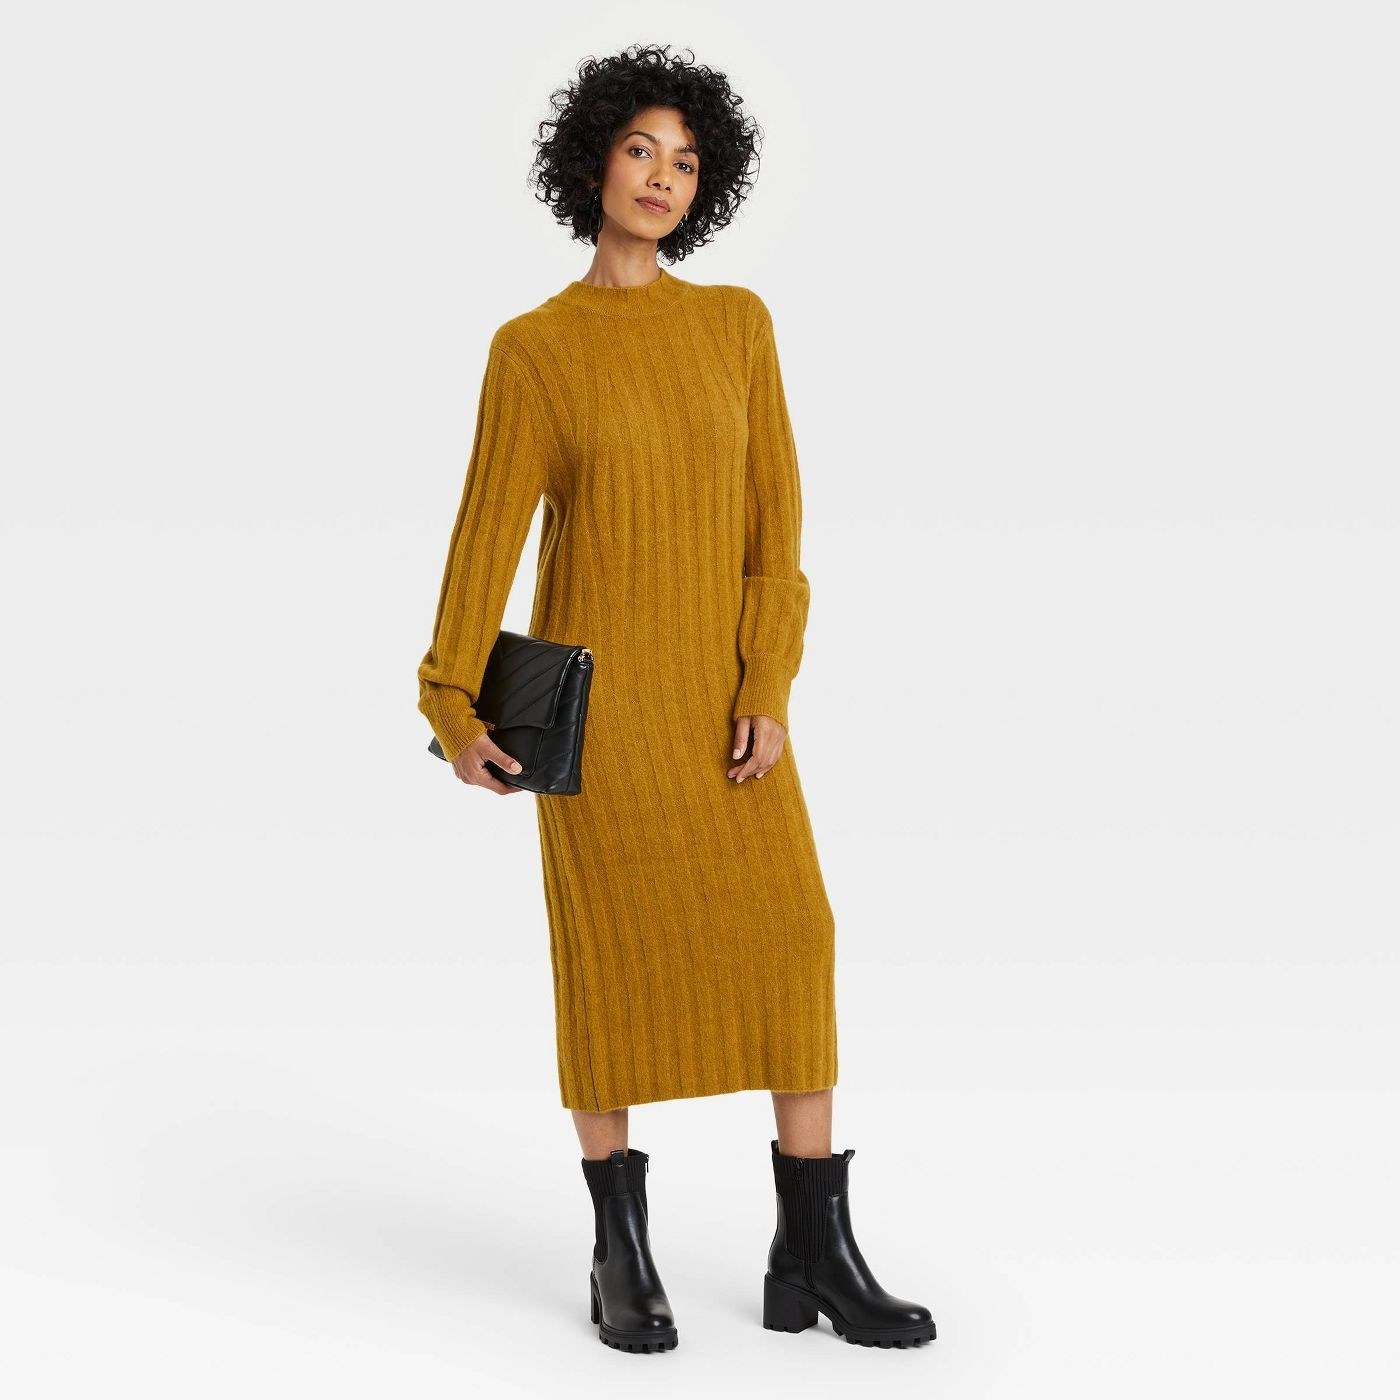 model wearing the sweater dress in mustard